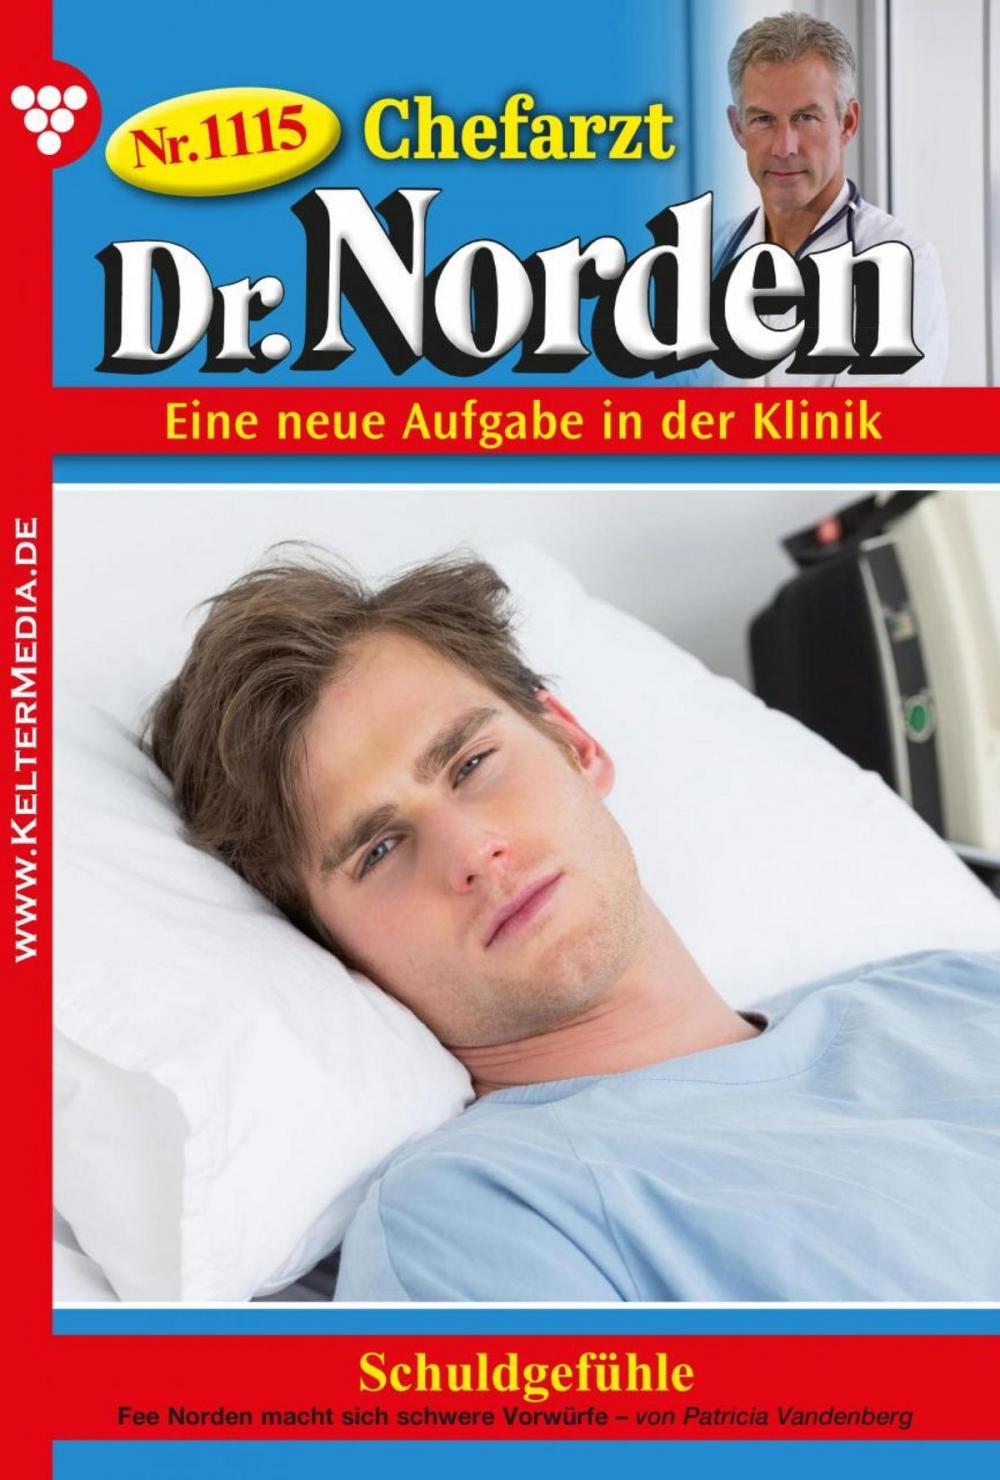 Big bigCover of Chefarzt Dr. Norden 1115 – Arztroman